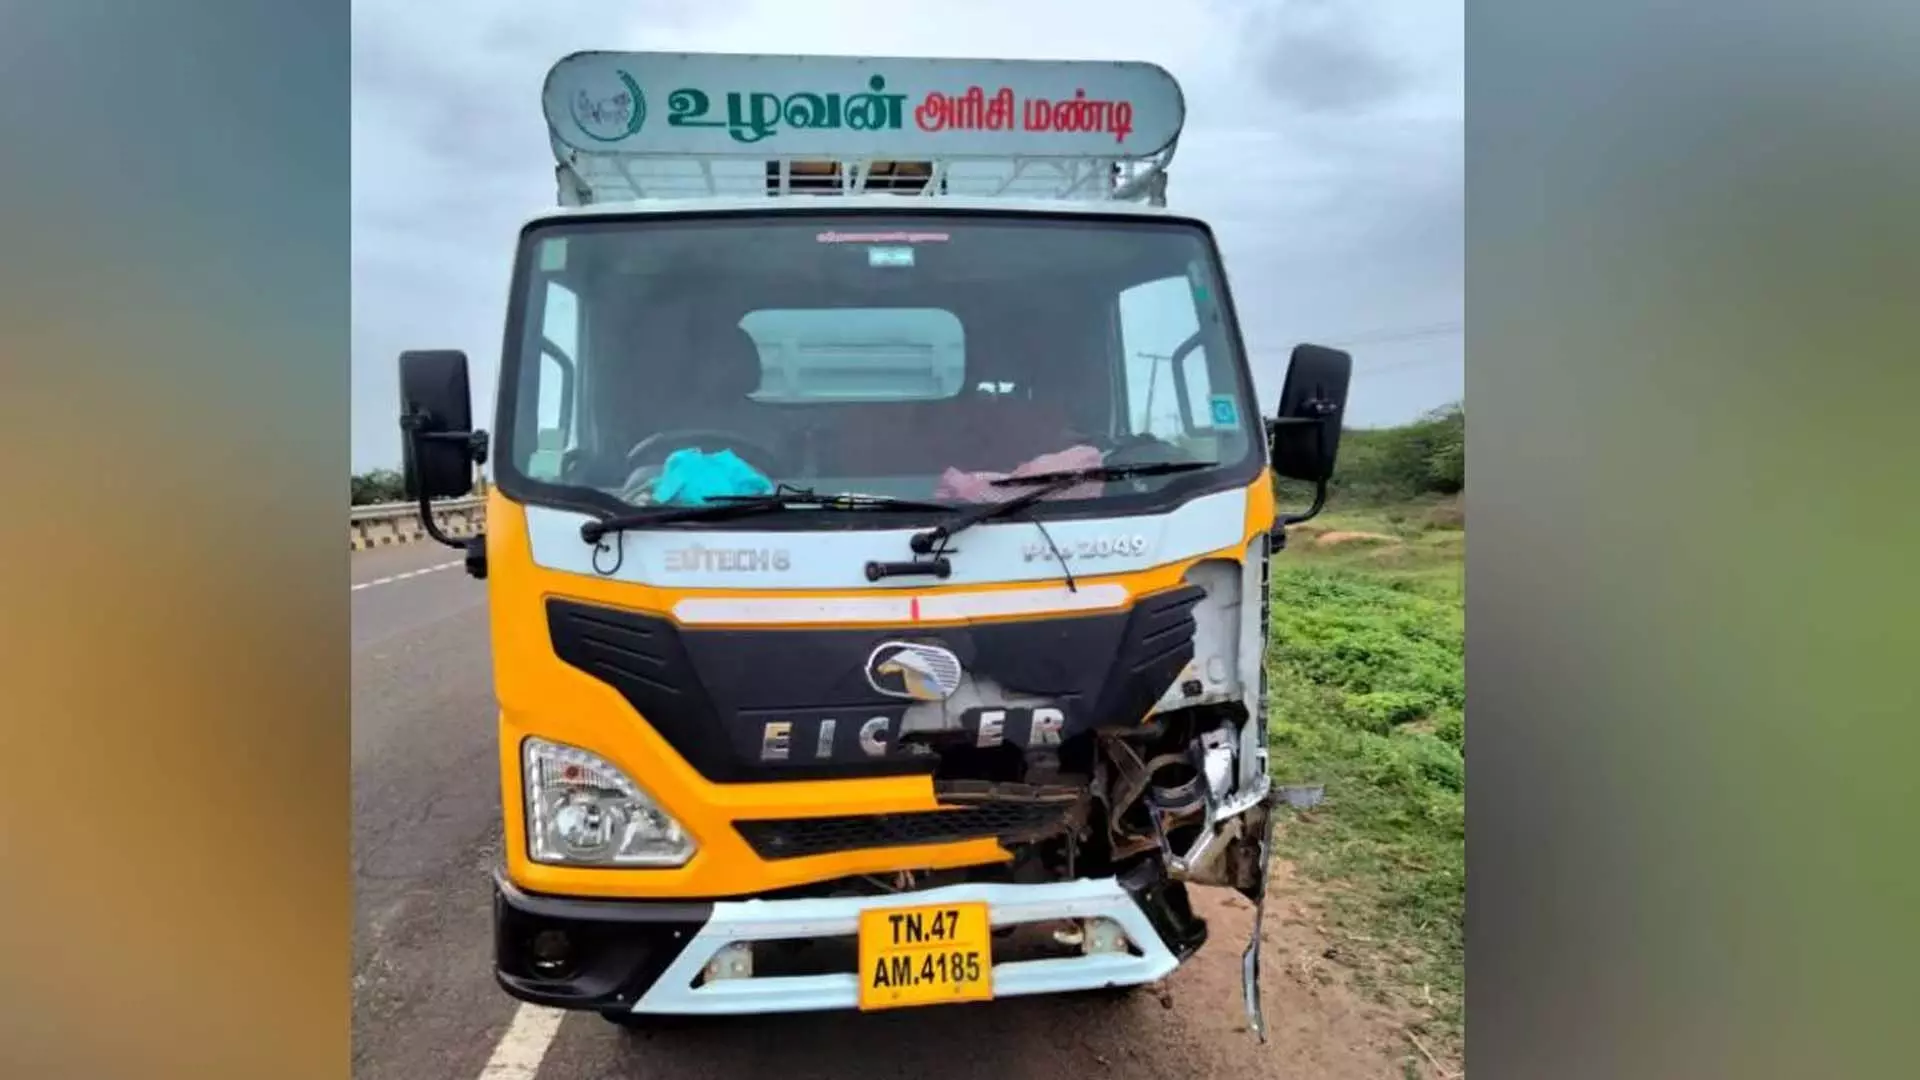 Tamil Nadu News: तंजावुर-तिरुचि राष्ट्रीय राजमार्ग पर वैन की टक्कर से पांच पदयात्रा तीर्थयात्रियों की मौत